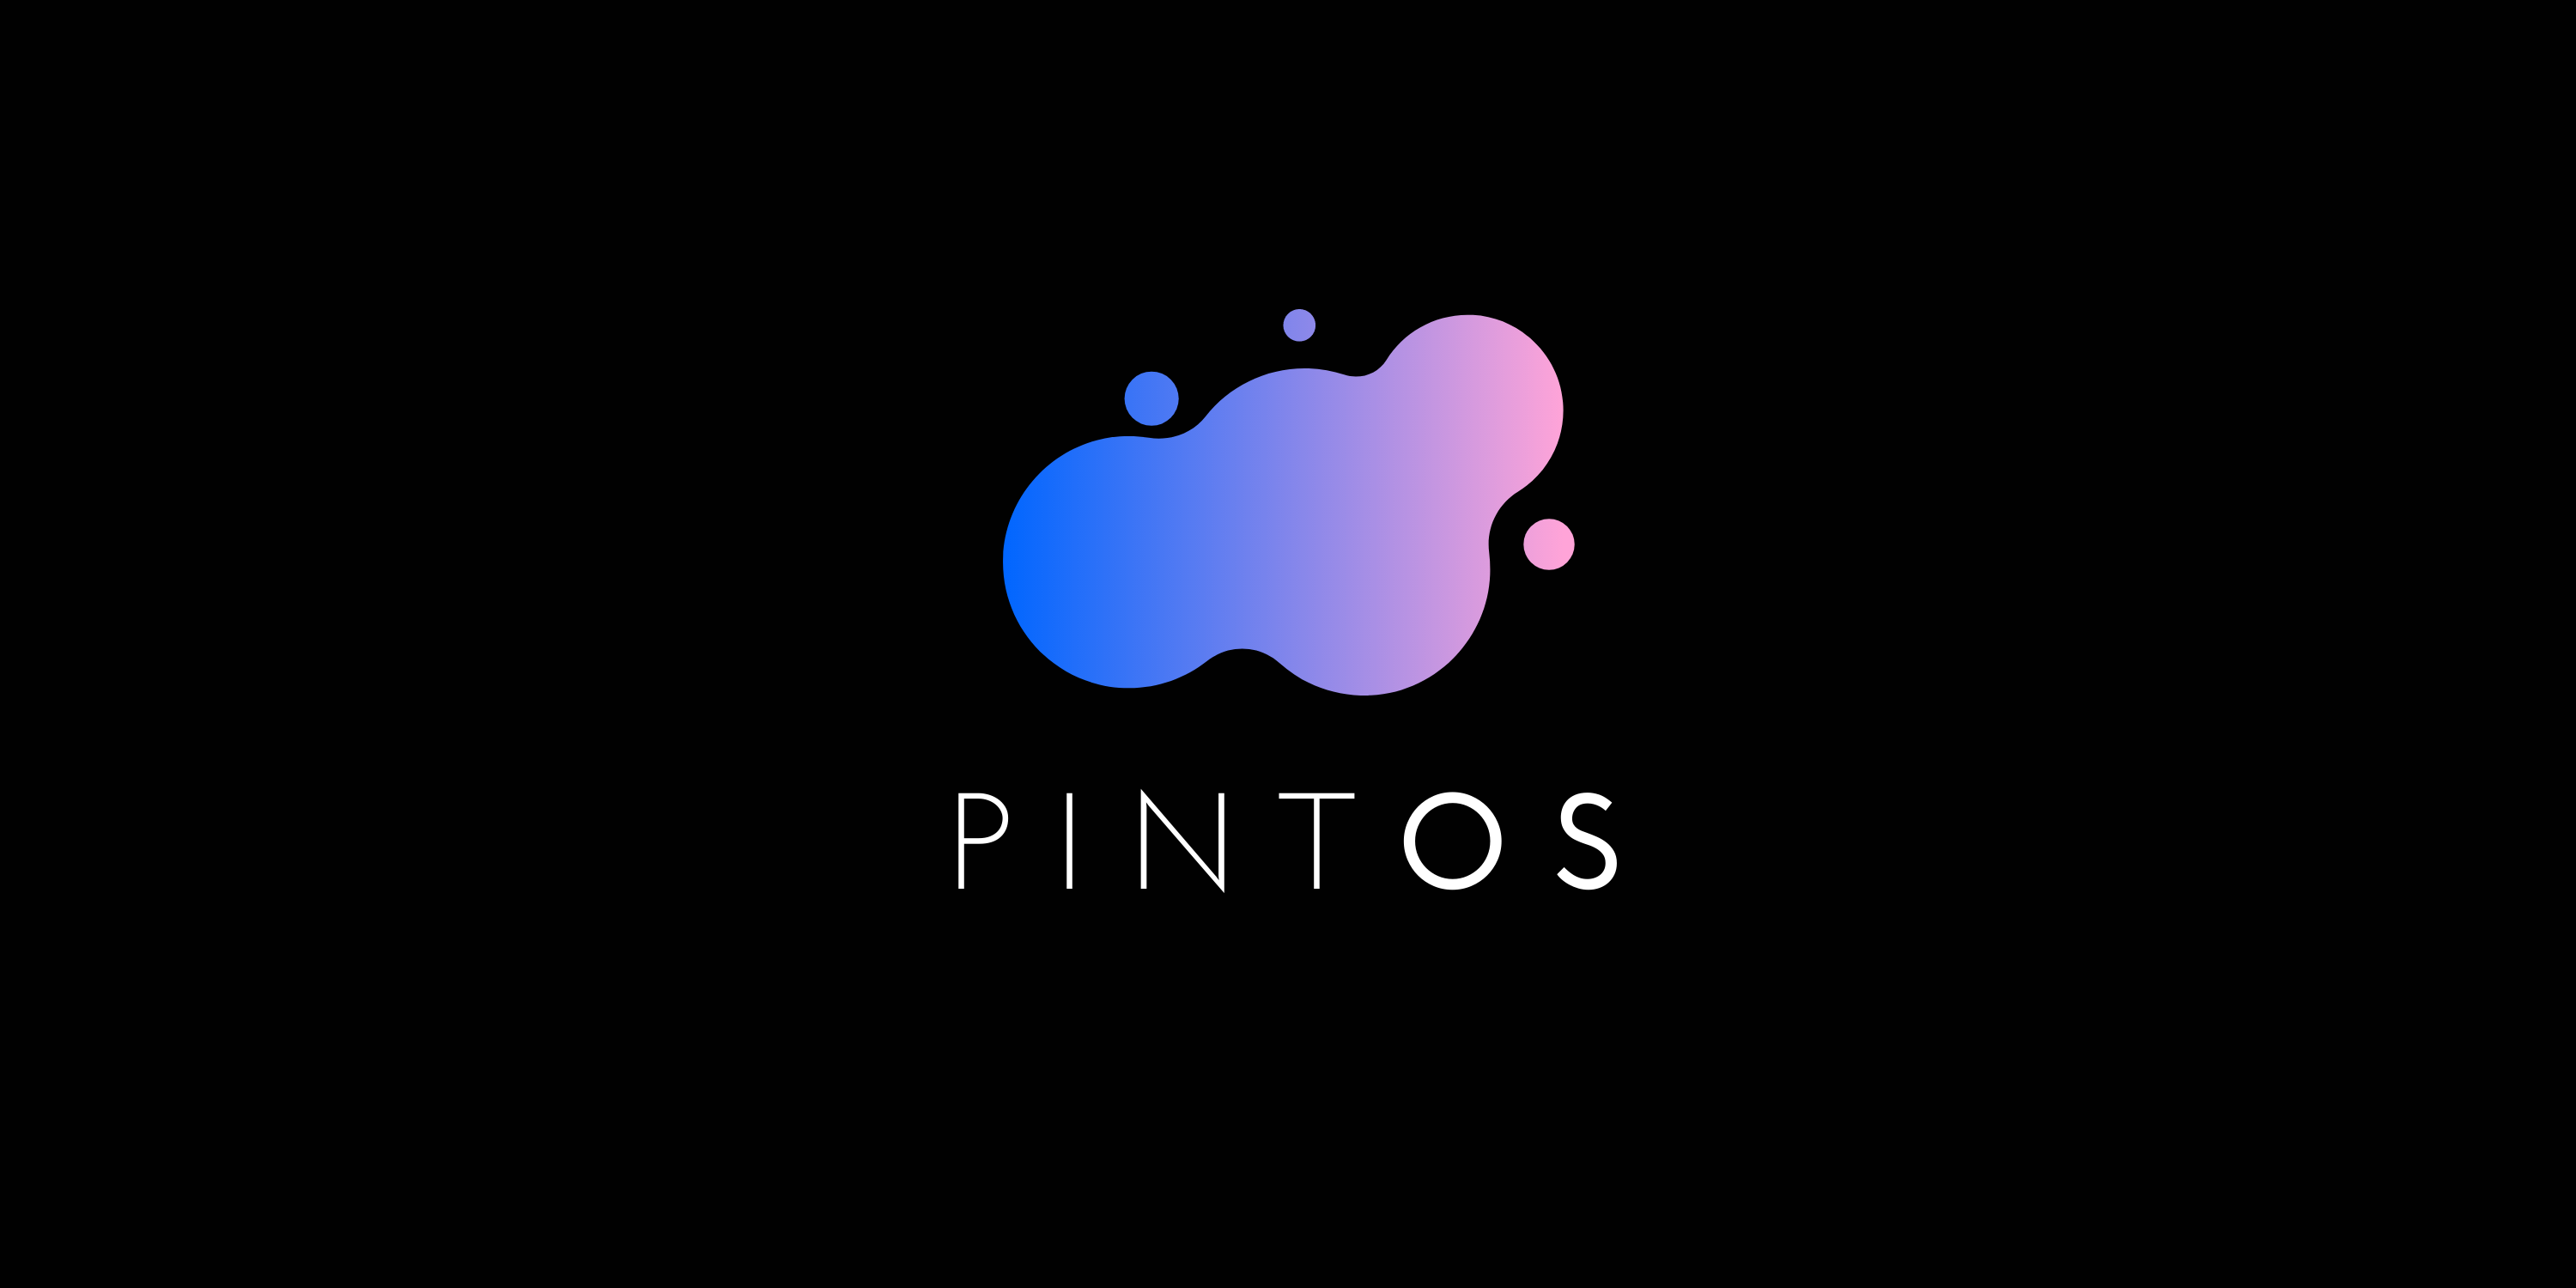 Pintos Banner Image